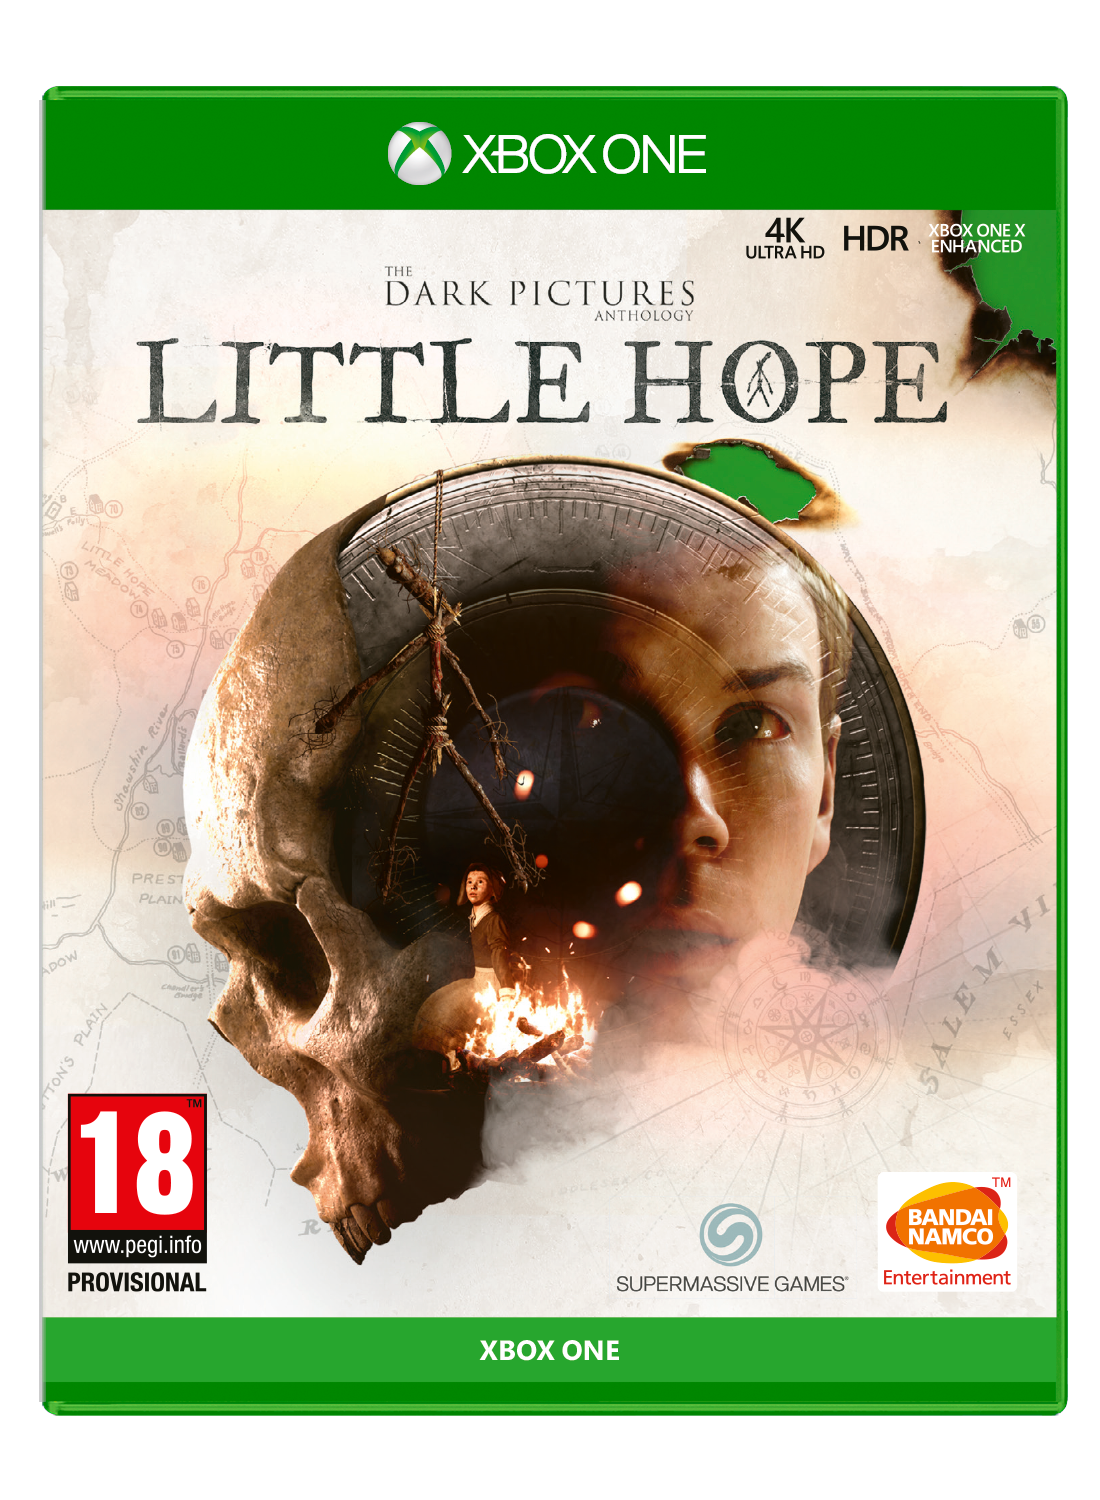 the dark anthology little hope download